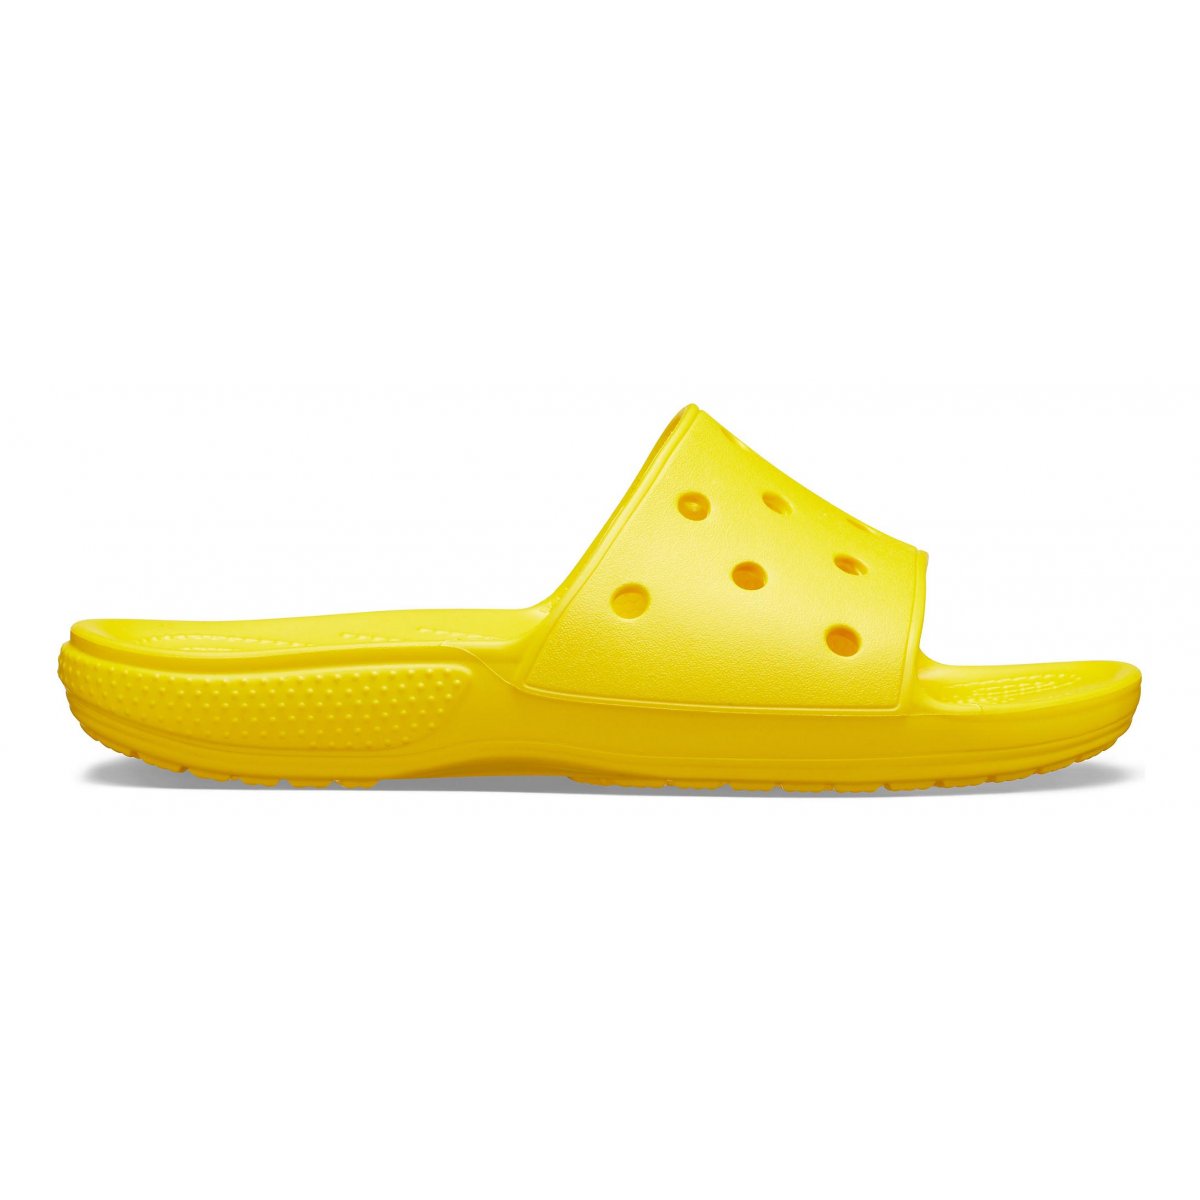 Classic crocs slide